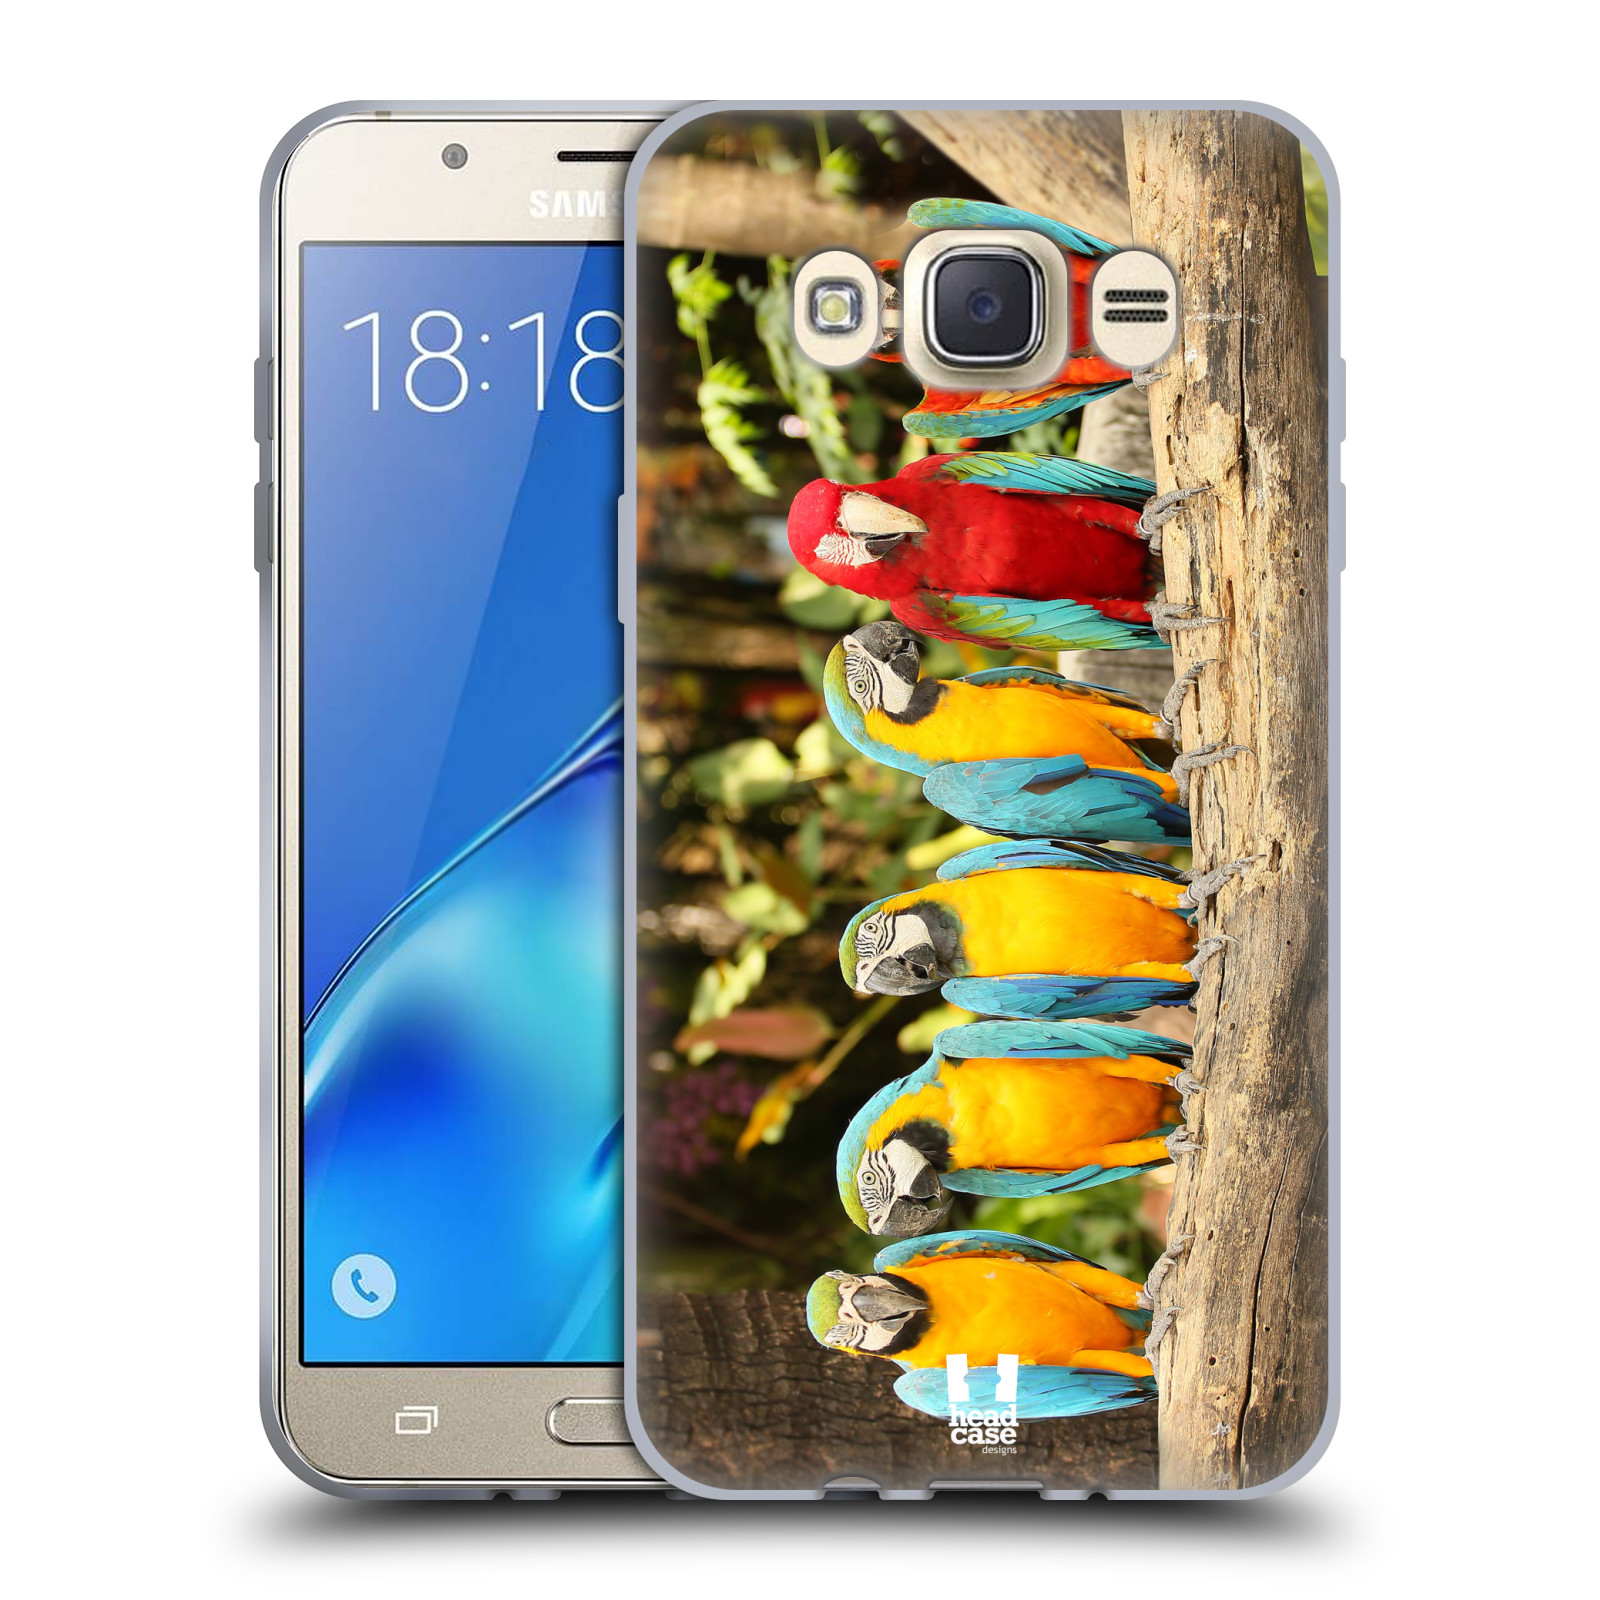 HEAD CASE silikonový obal, kryt na mobil Samsung Galaxy J7 2016 (J710, J710F) vzor slavná zvířata foto papoušci